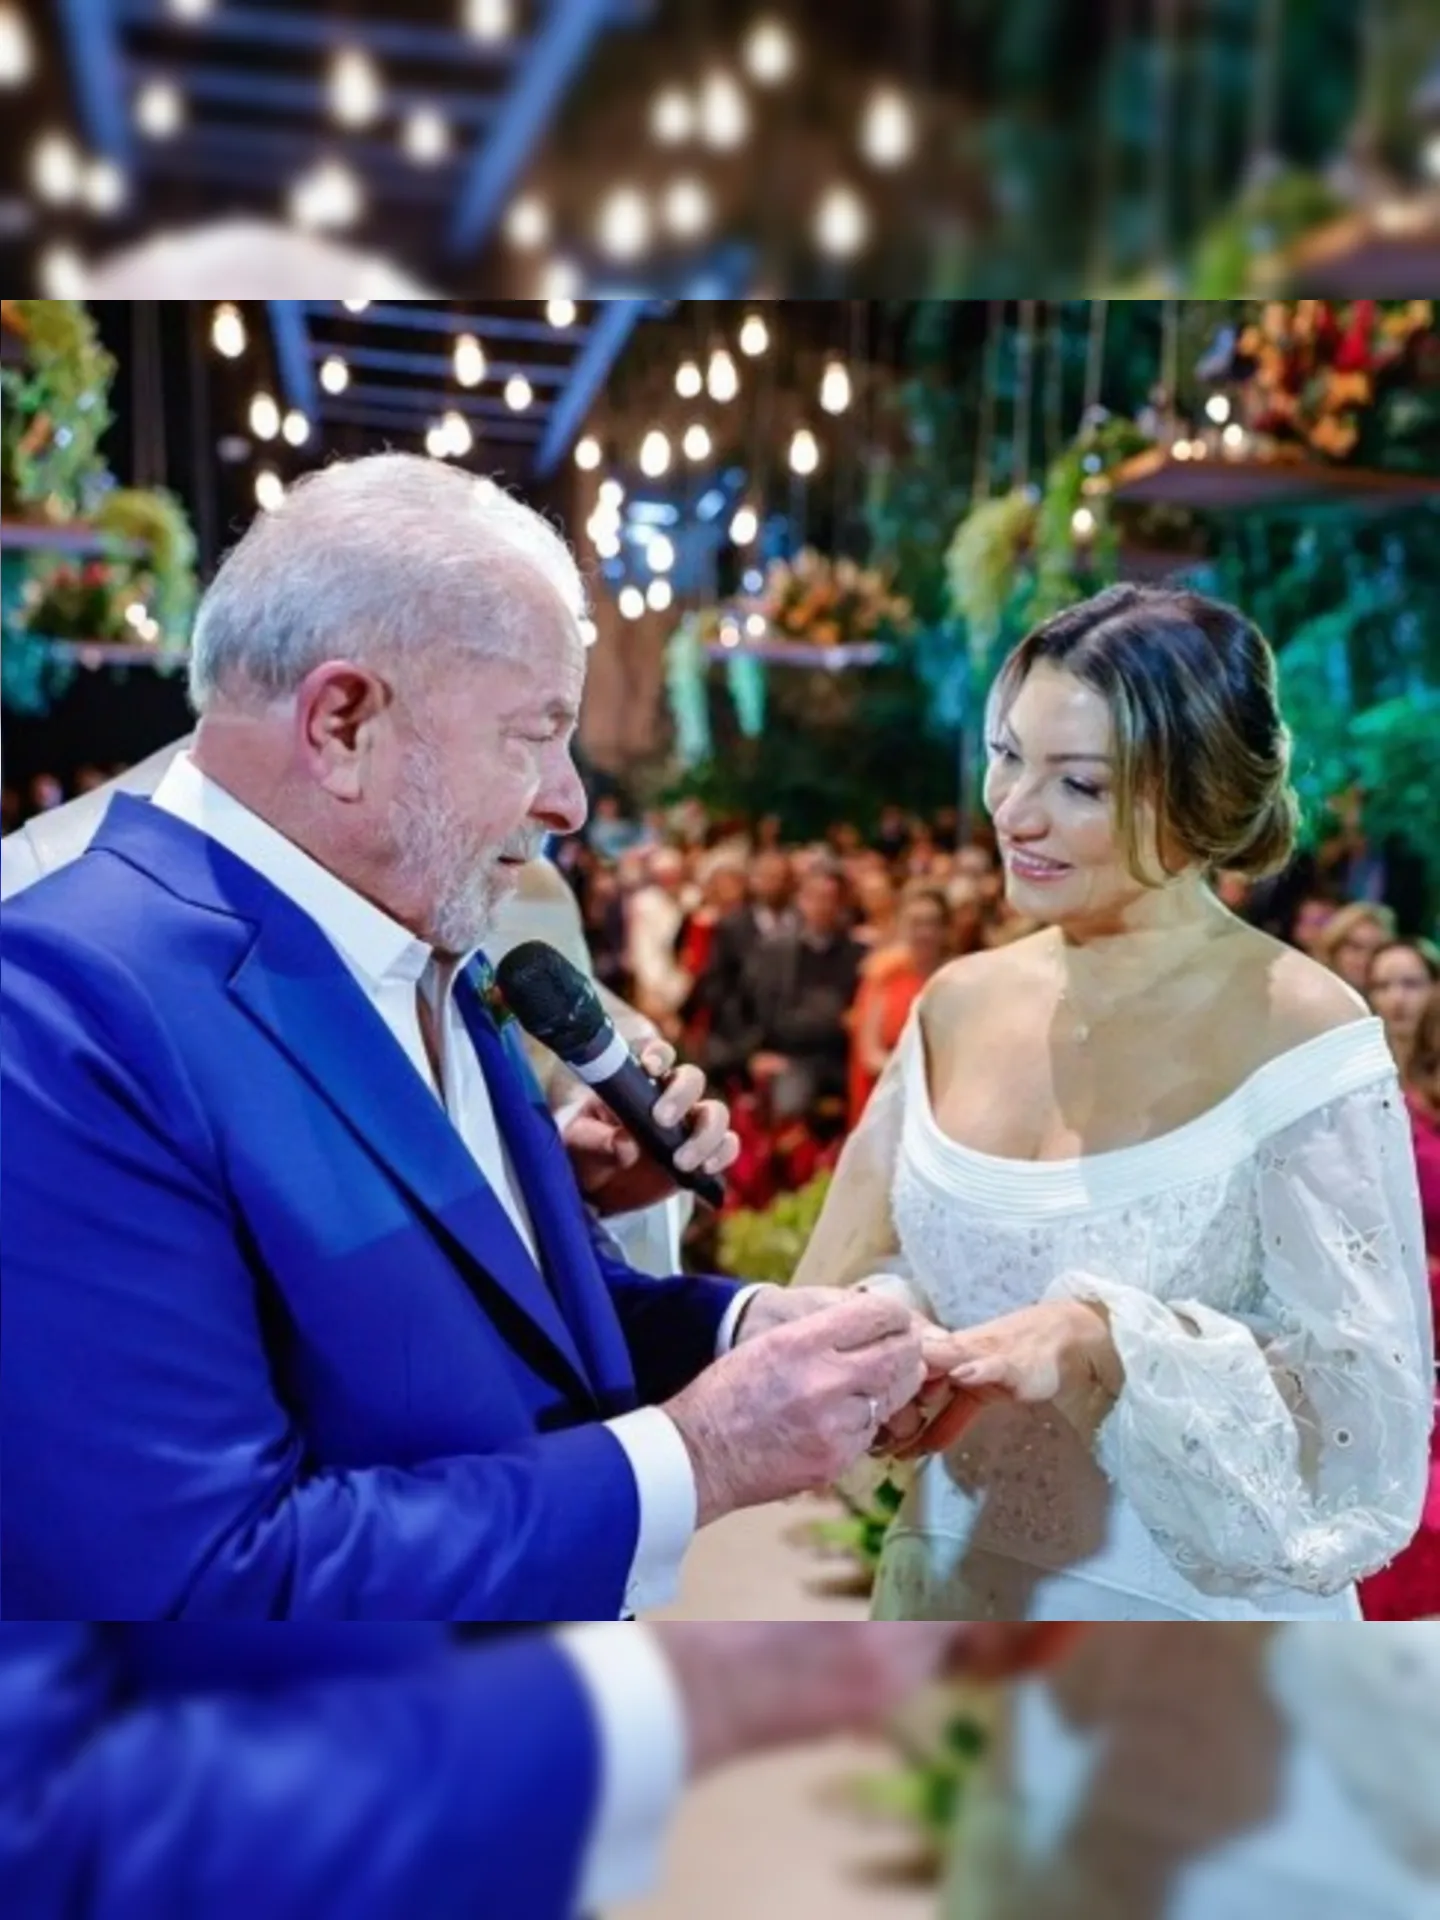 Casamento de Lula e Janja